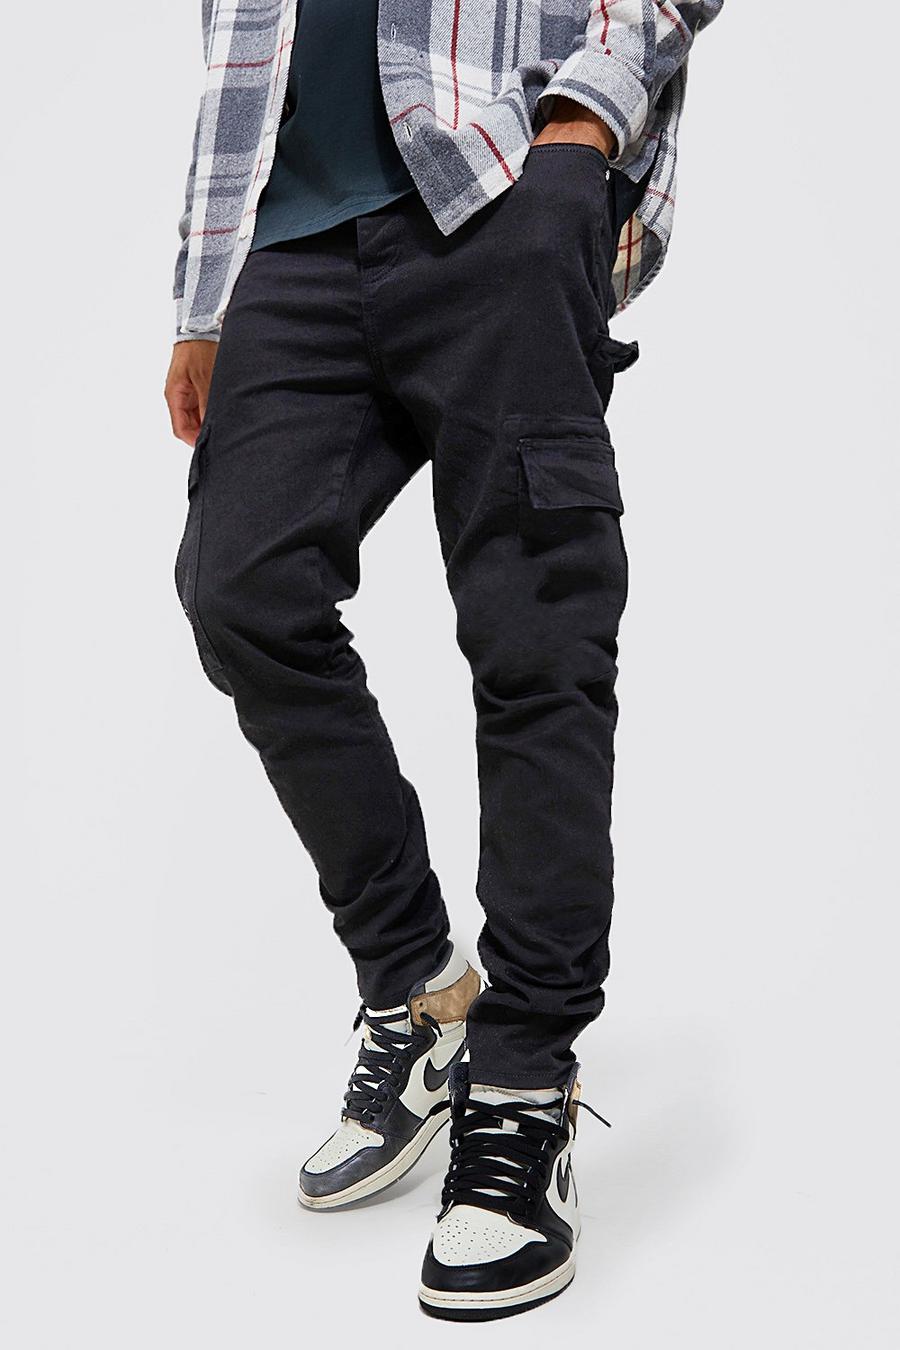 שחור nero סקיני ג'ינס דגמ'ח נמתח בסגנון נגרים, לגברים גבוהים